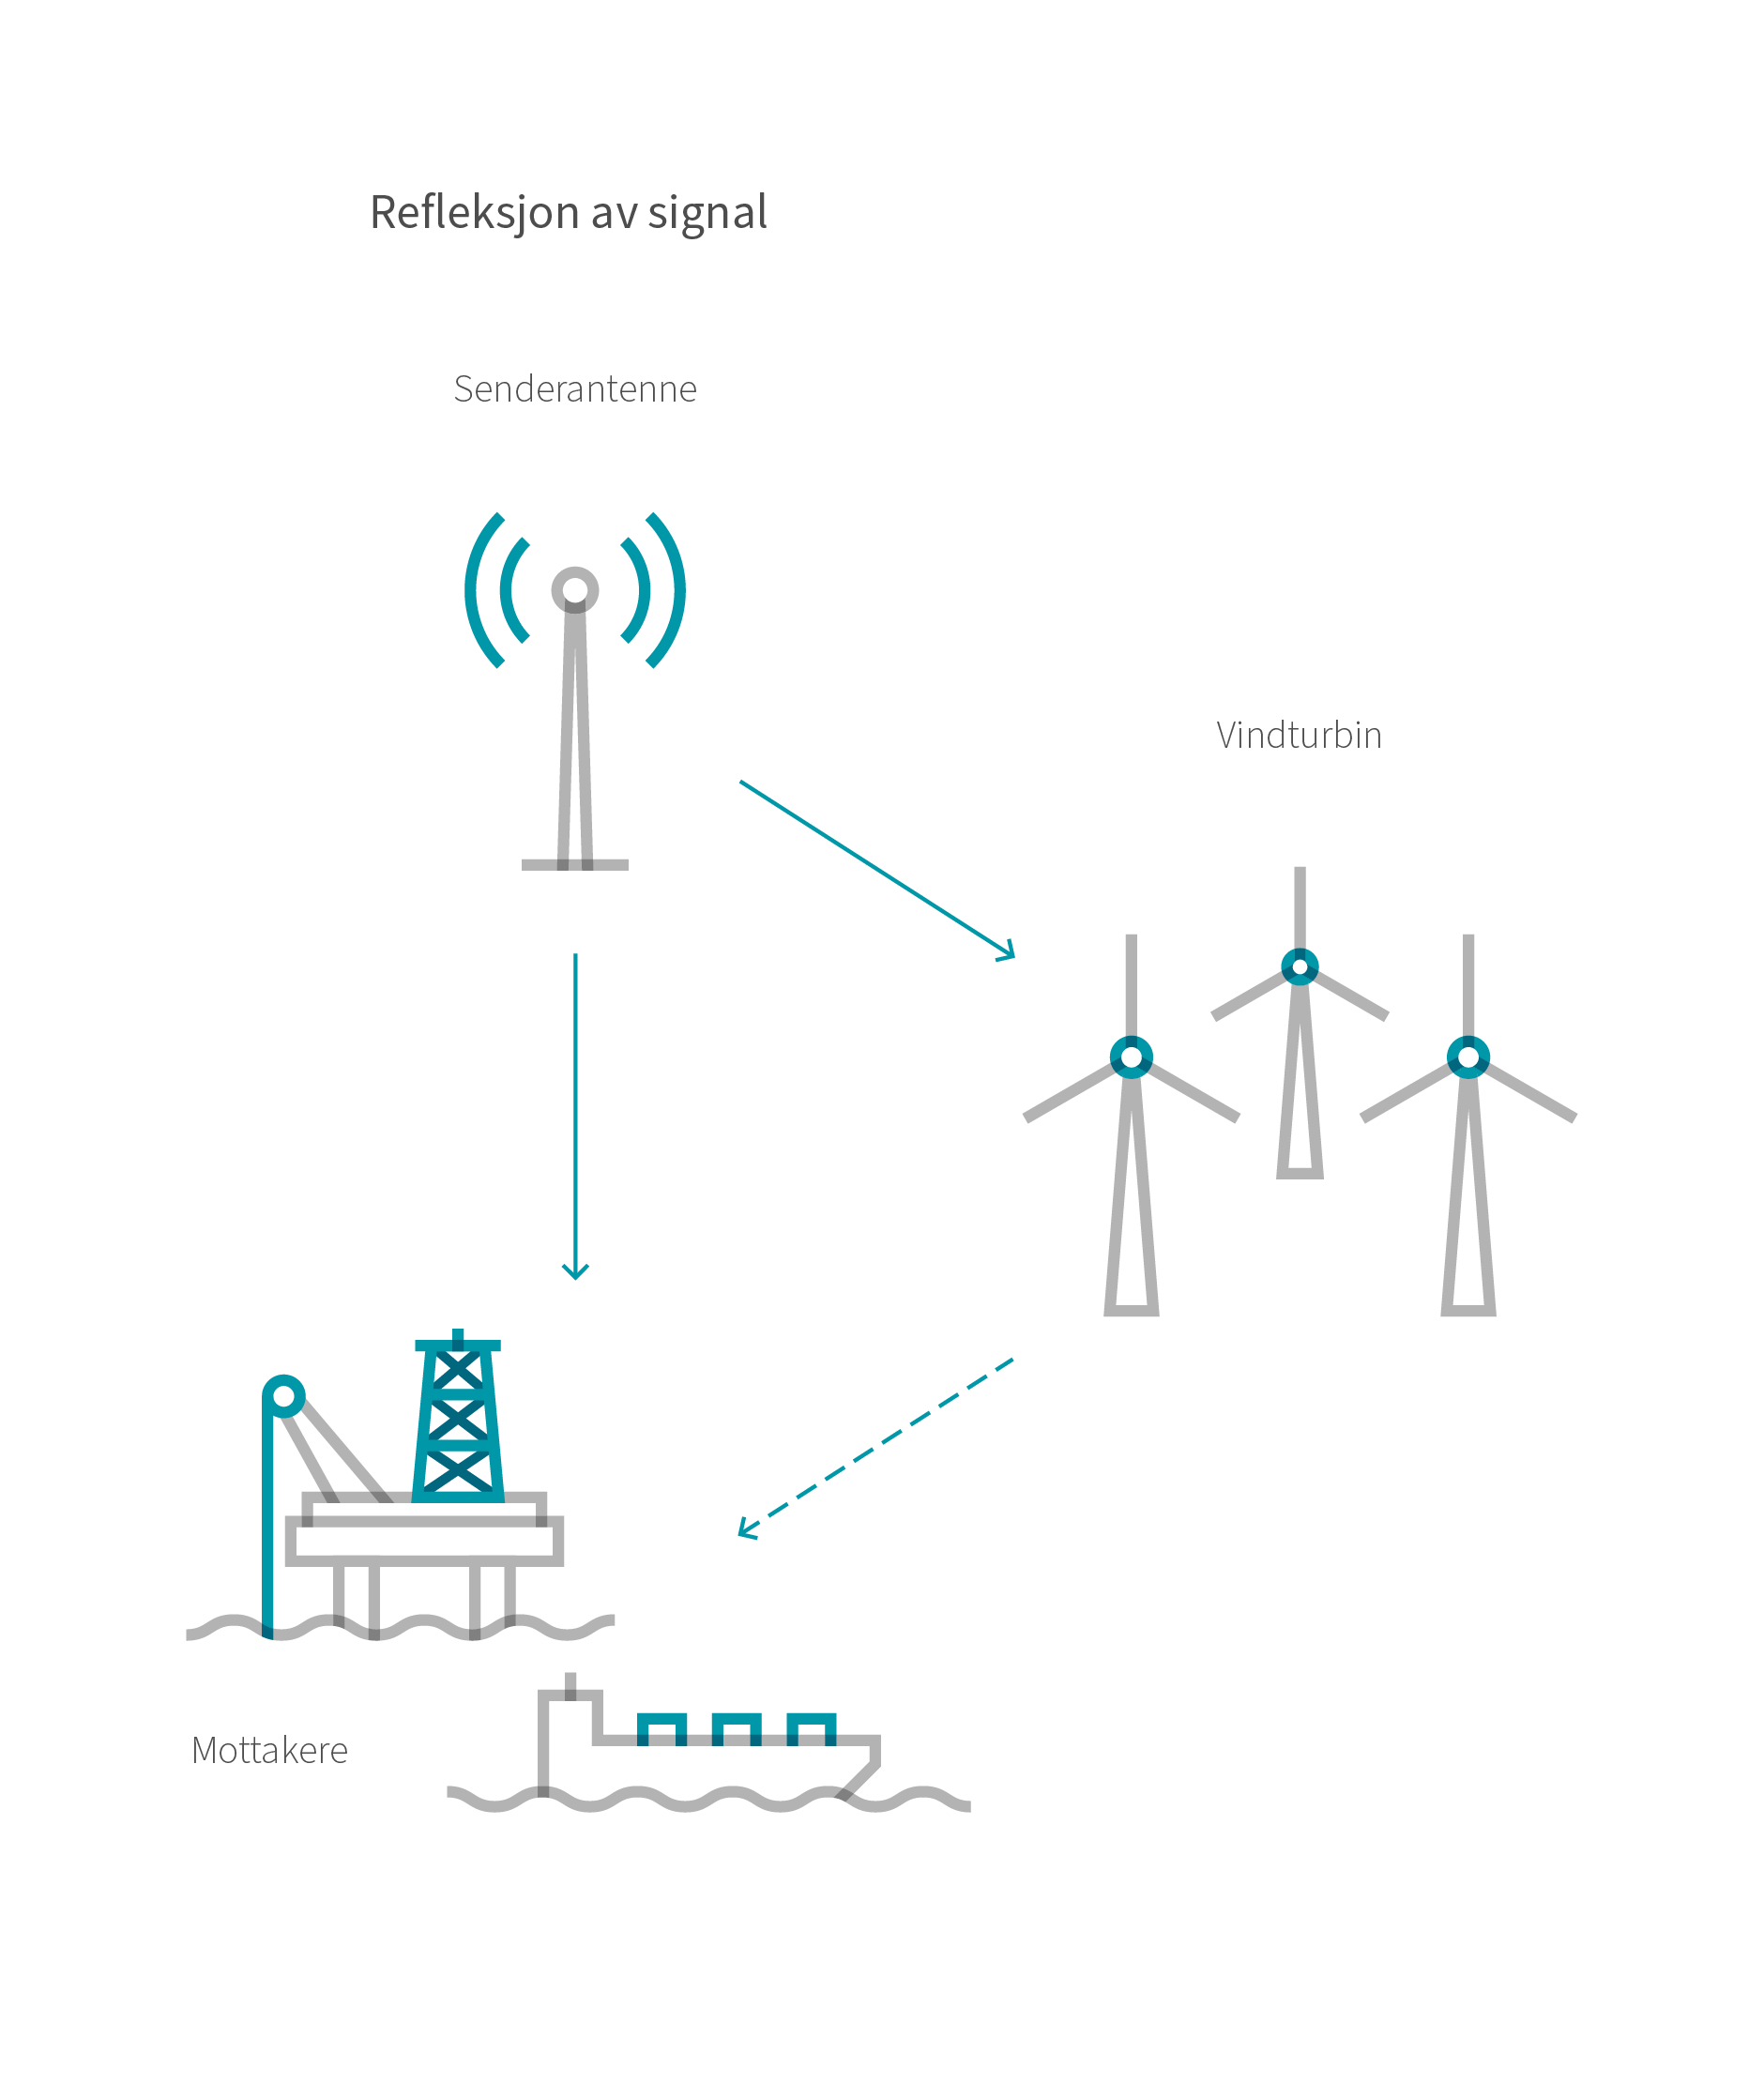 Figuren viser hvordan vindturbiner kan reflektere signal. Kilde: NVE etter opprinnelig figur ITU-R (2)